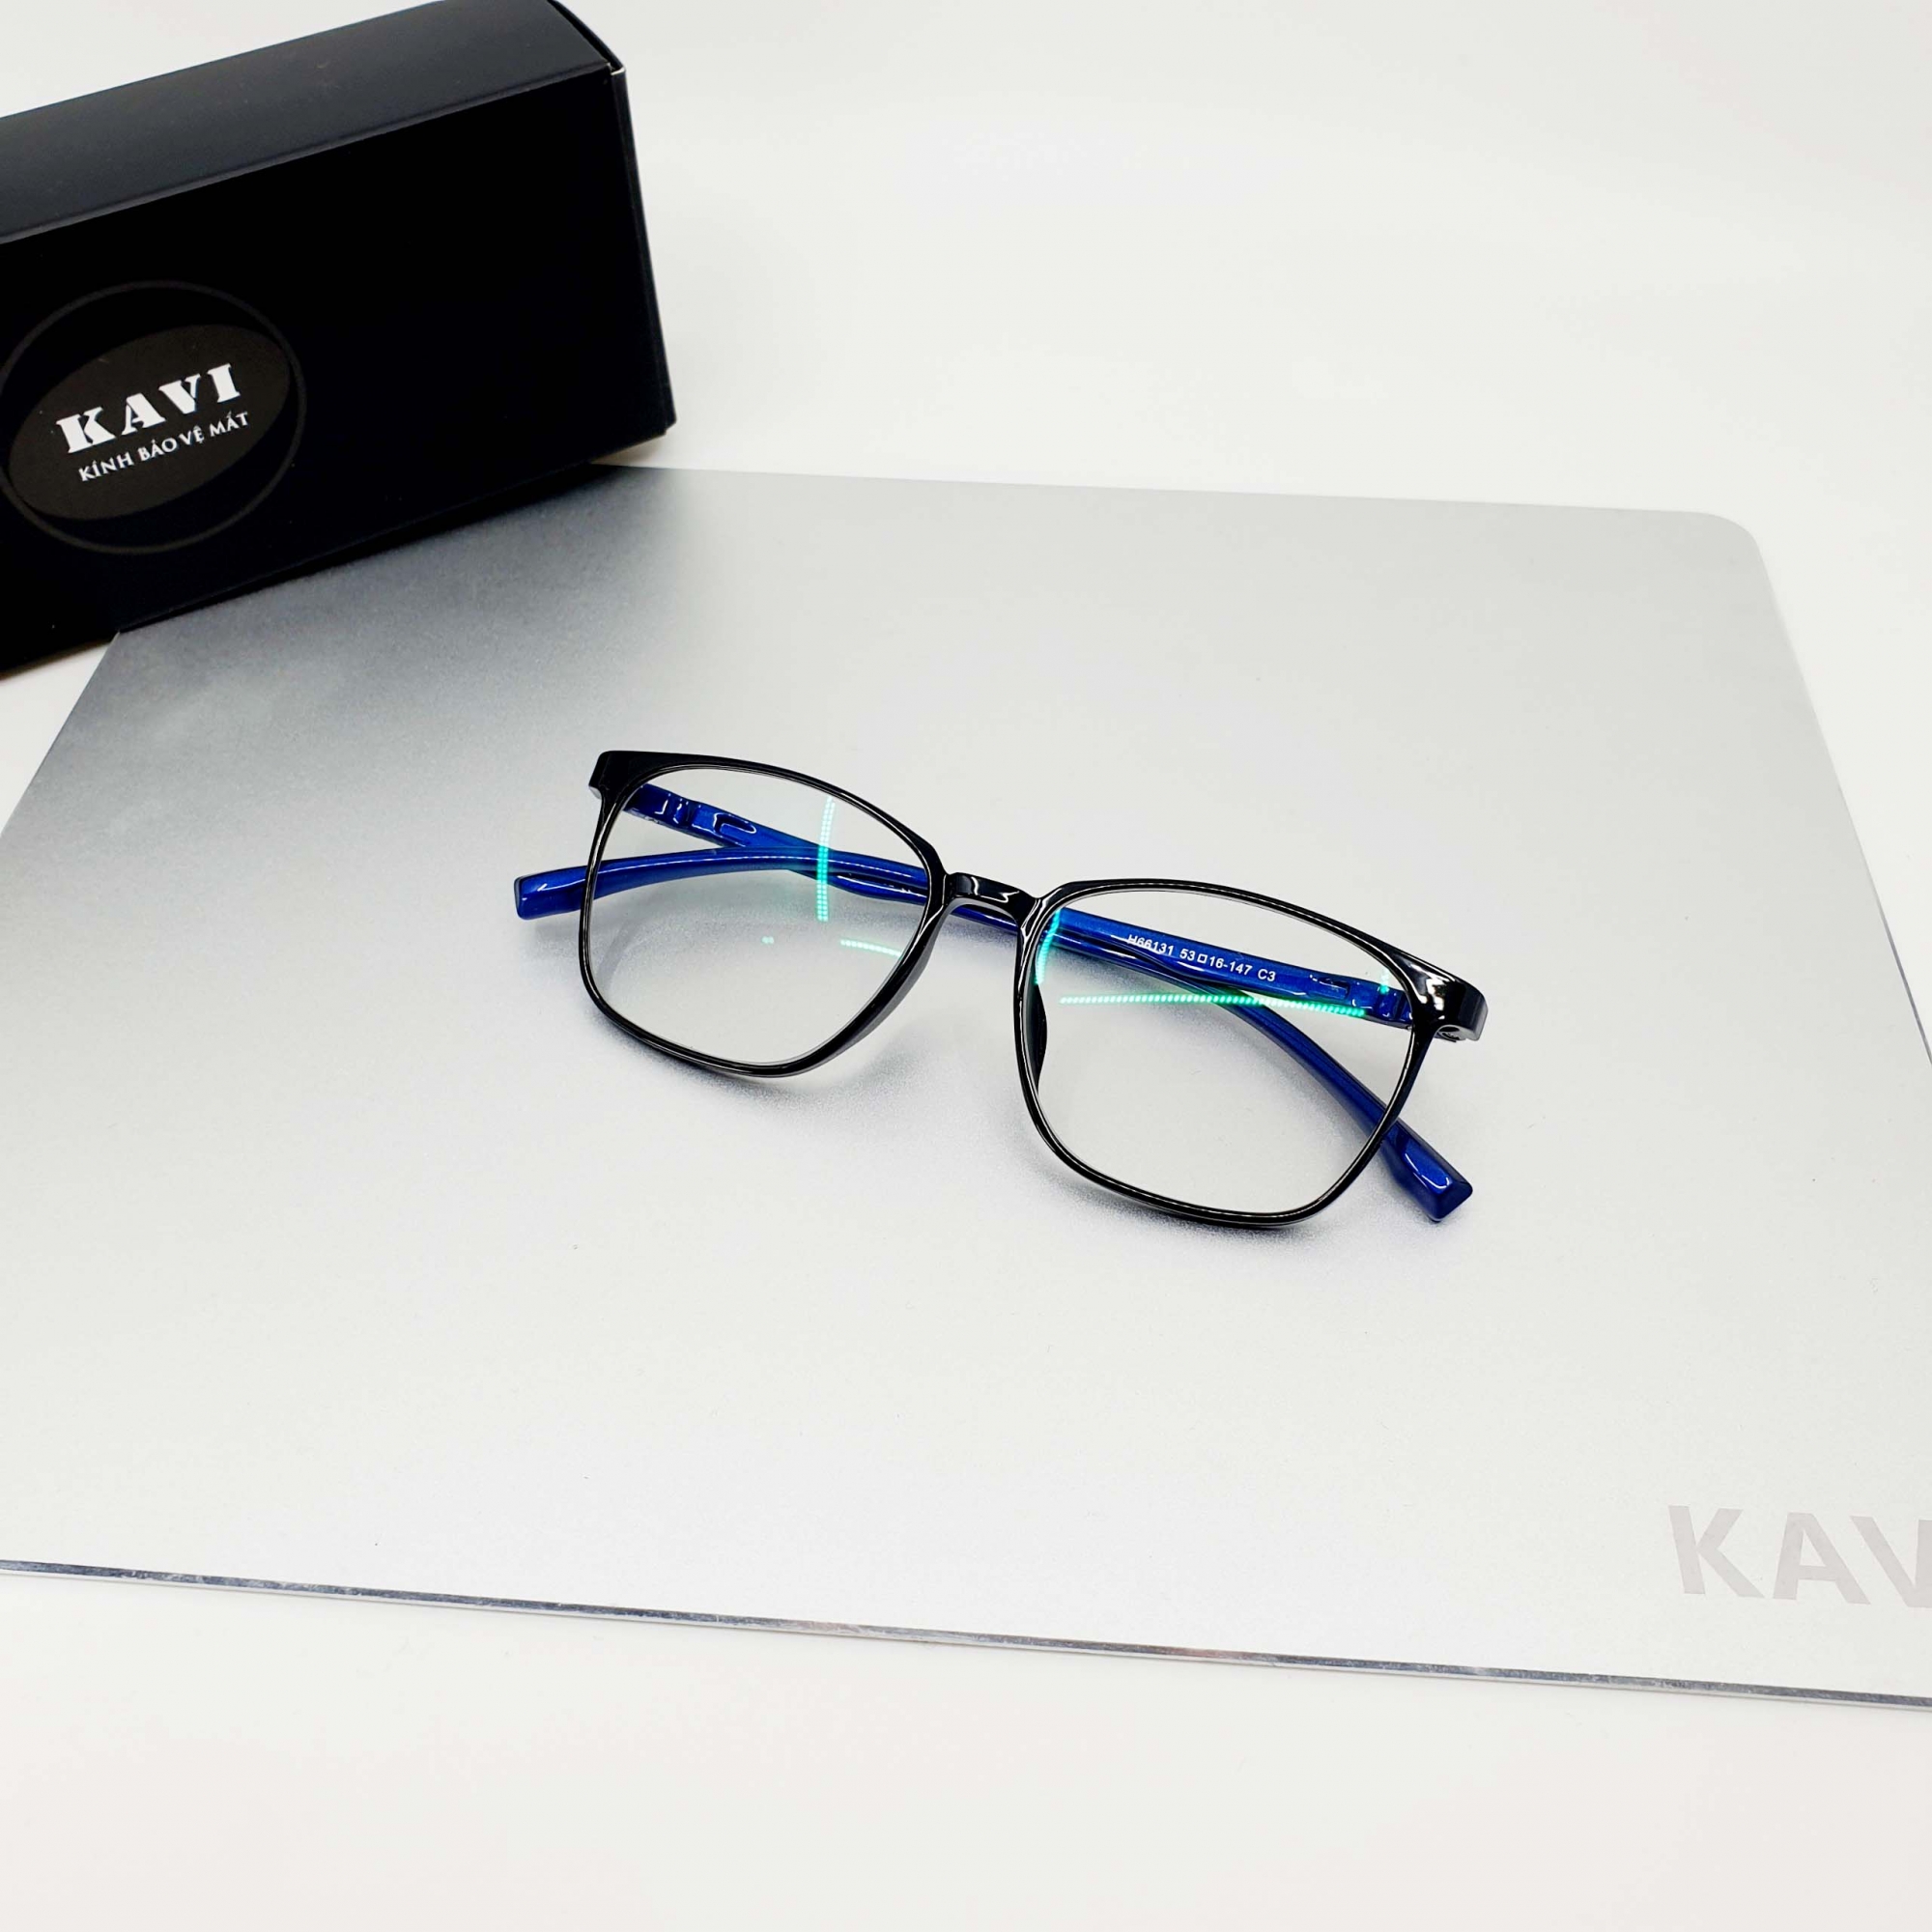 kính Kavi S6 màu xanh navy